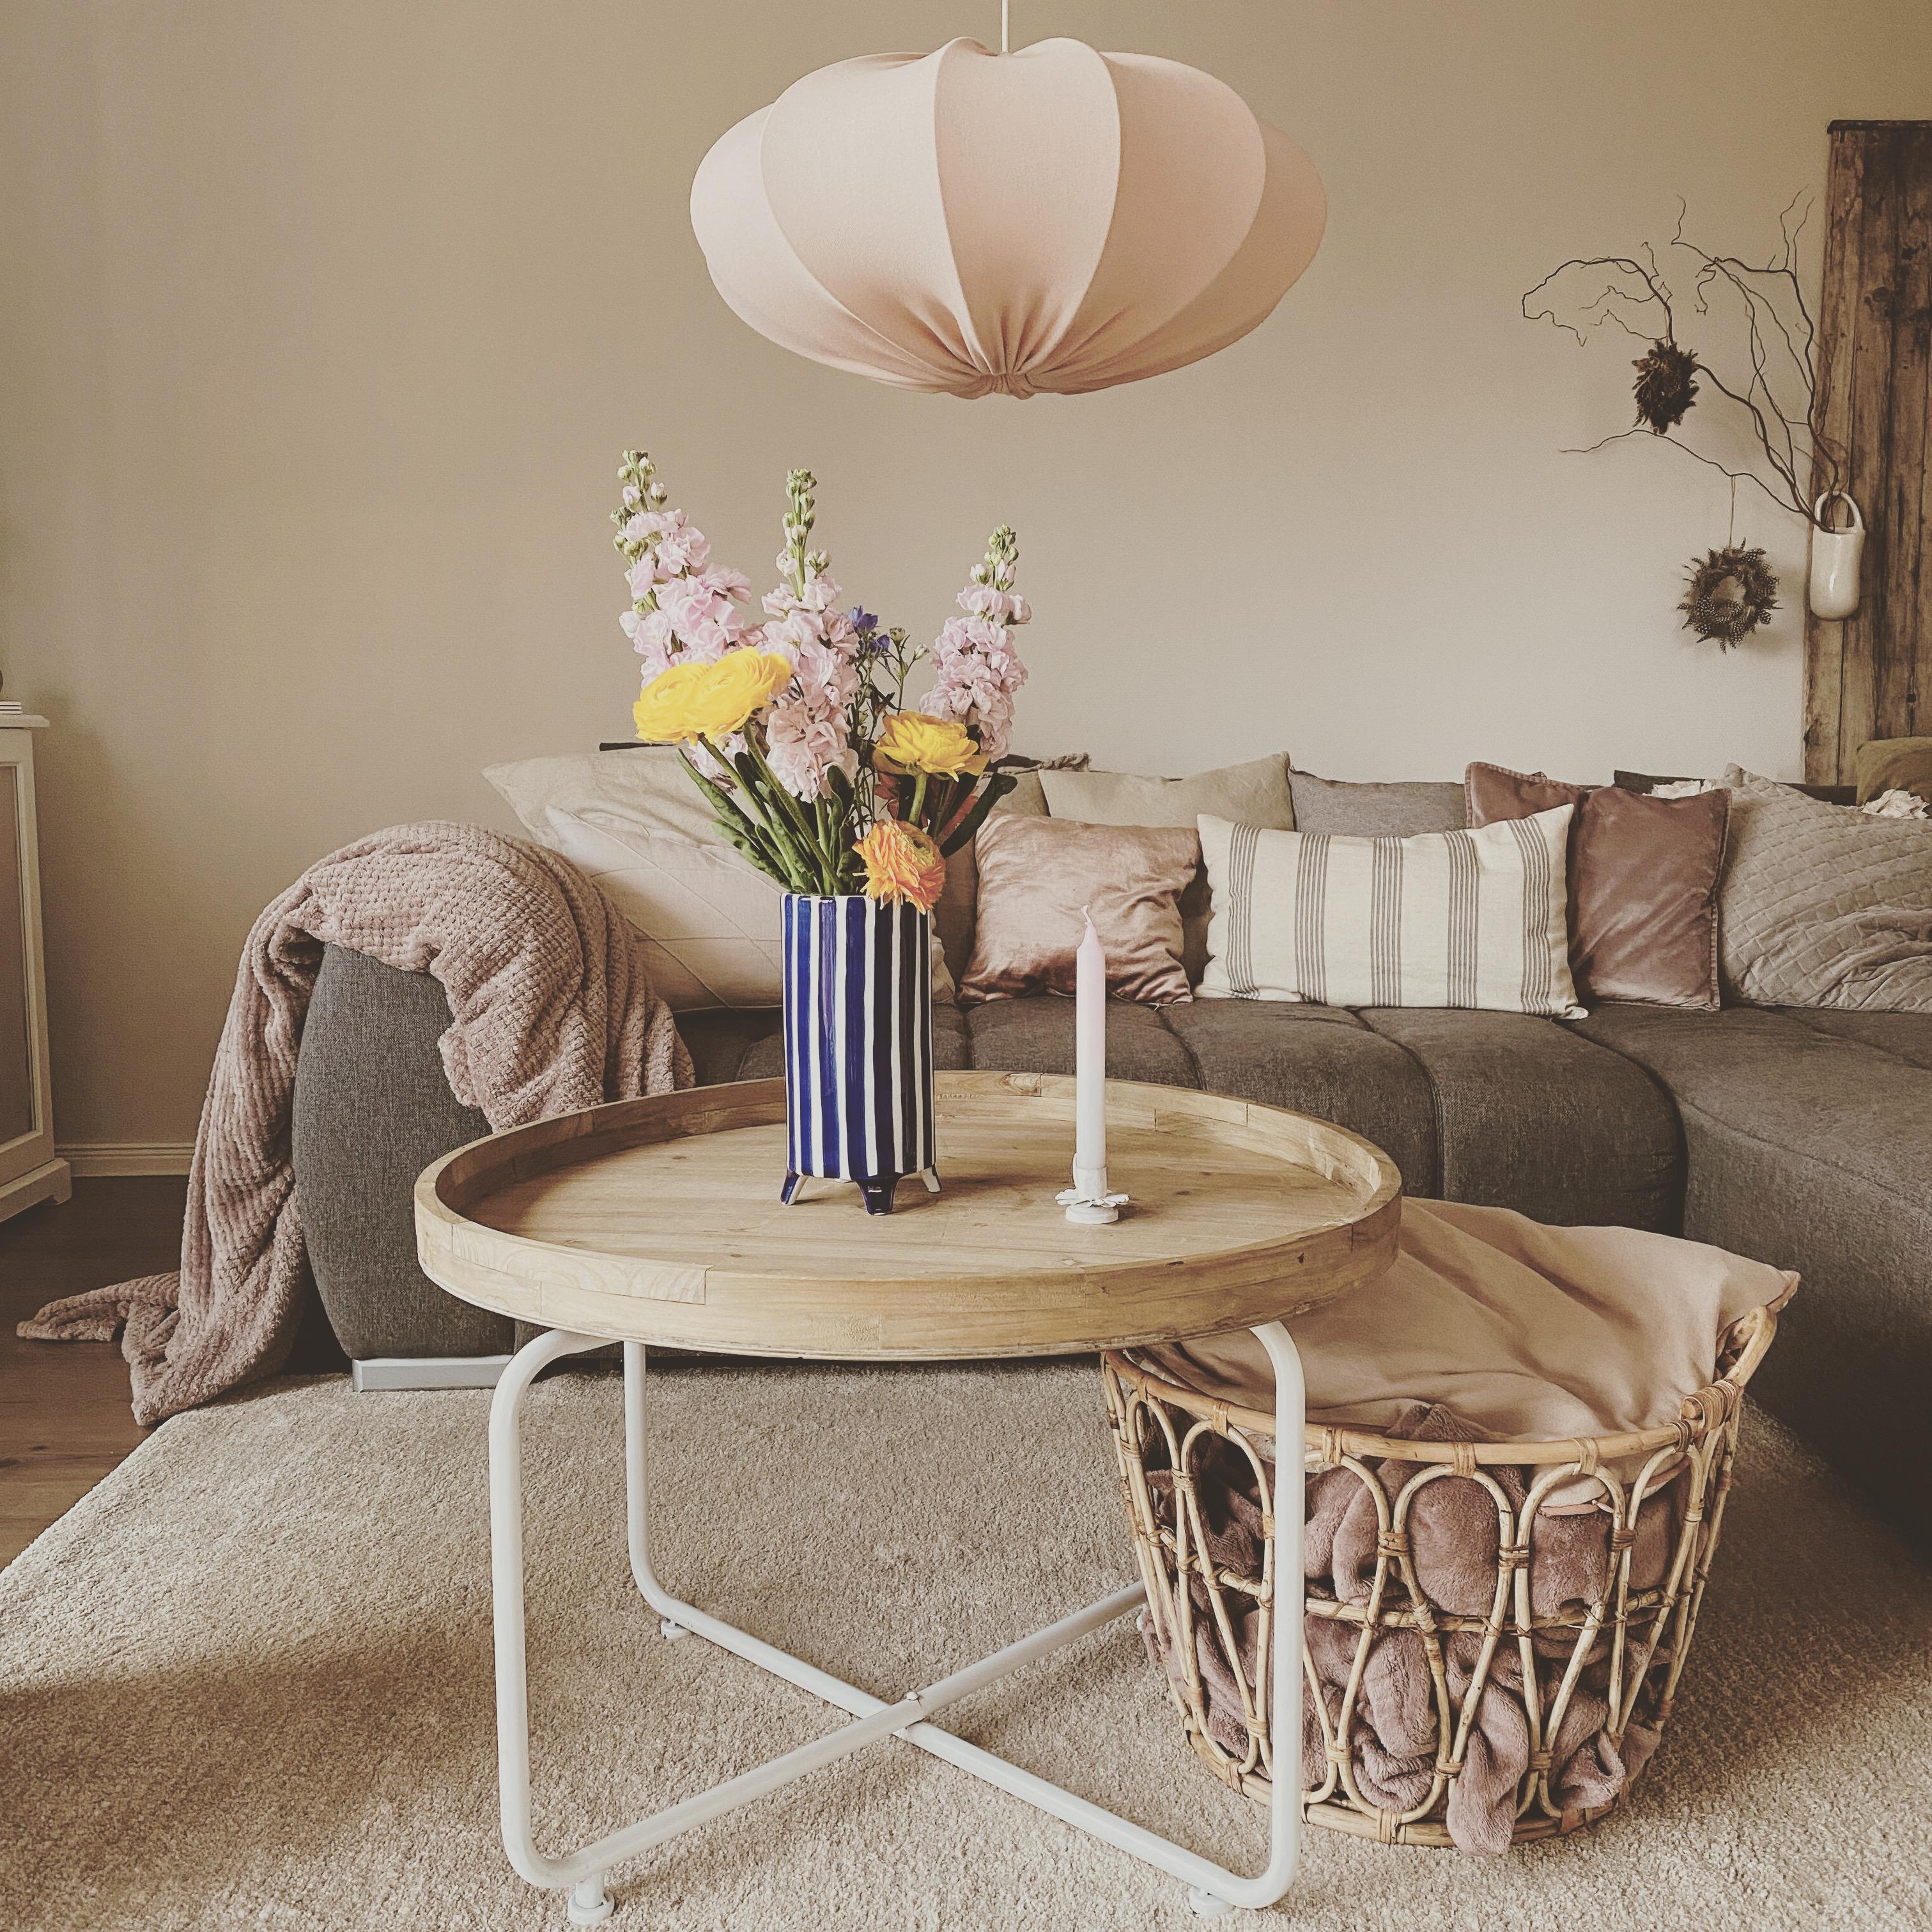 Vasenliebe
#vase#stripes#livingroominspo#couchstyle#freshflowers